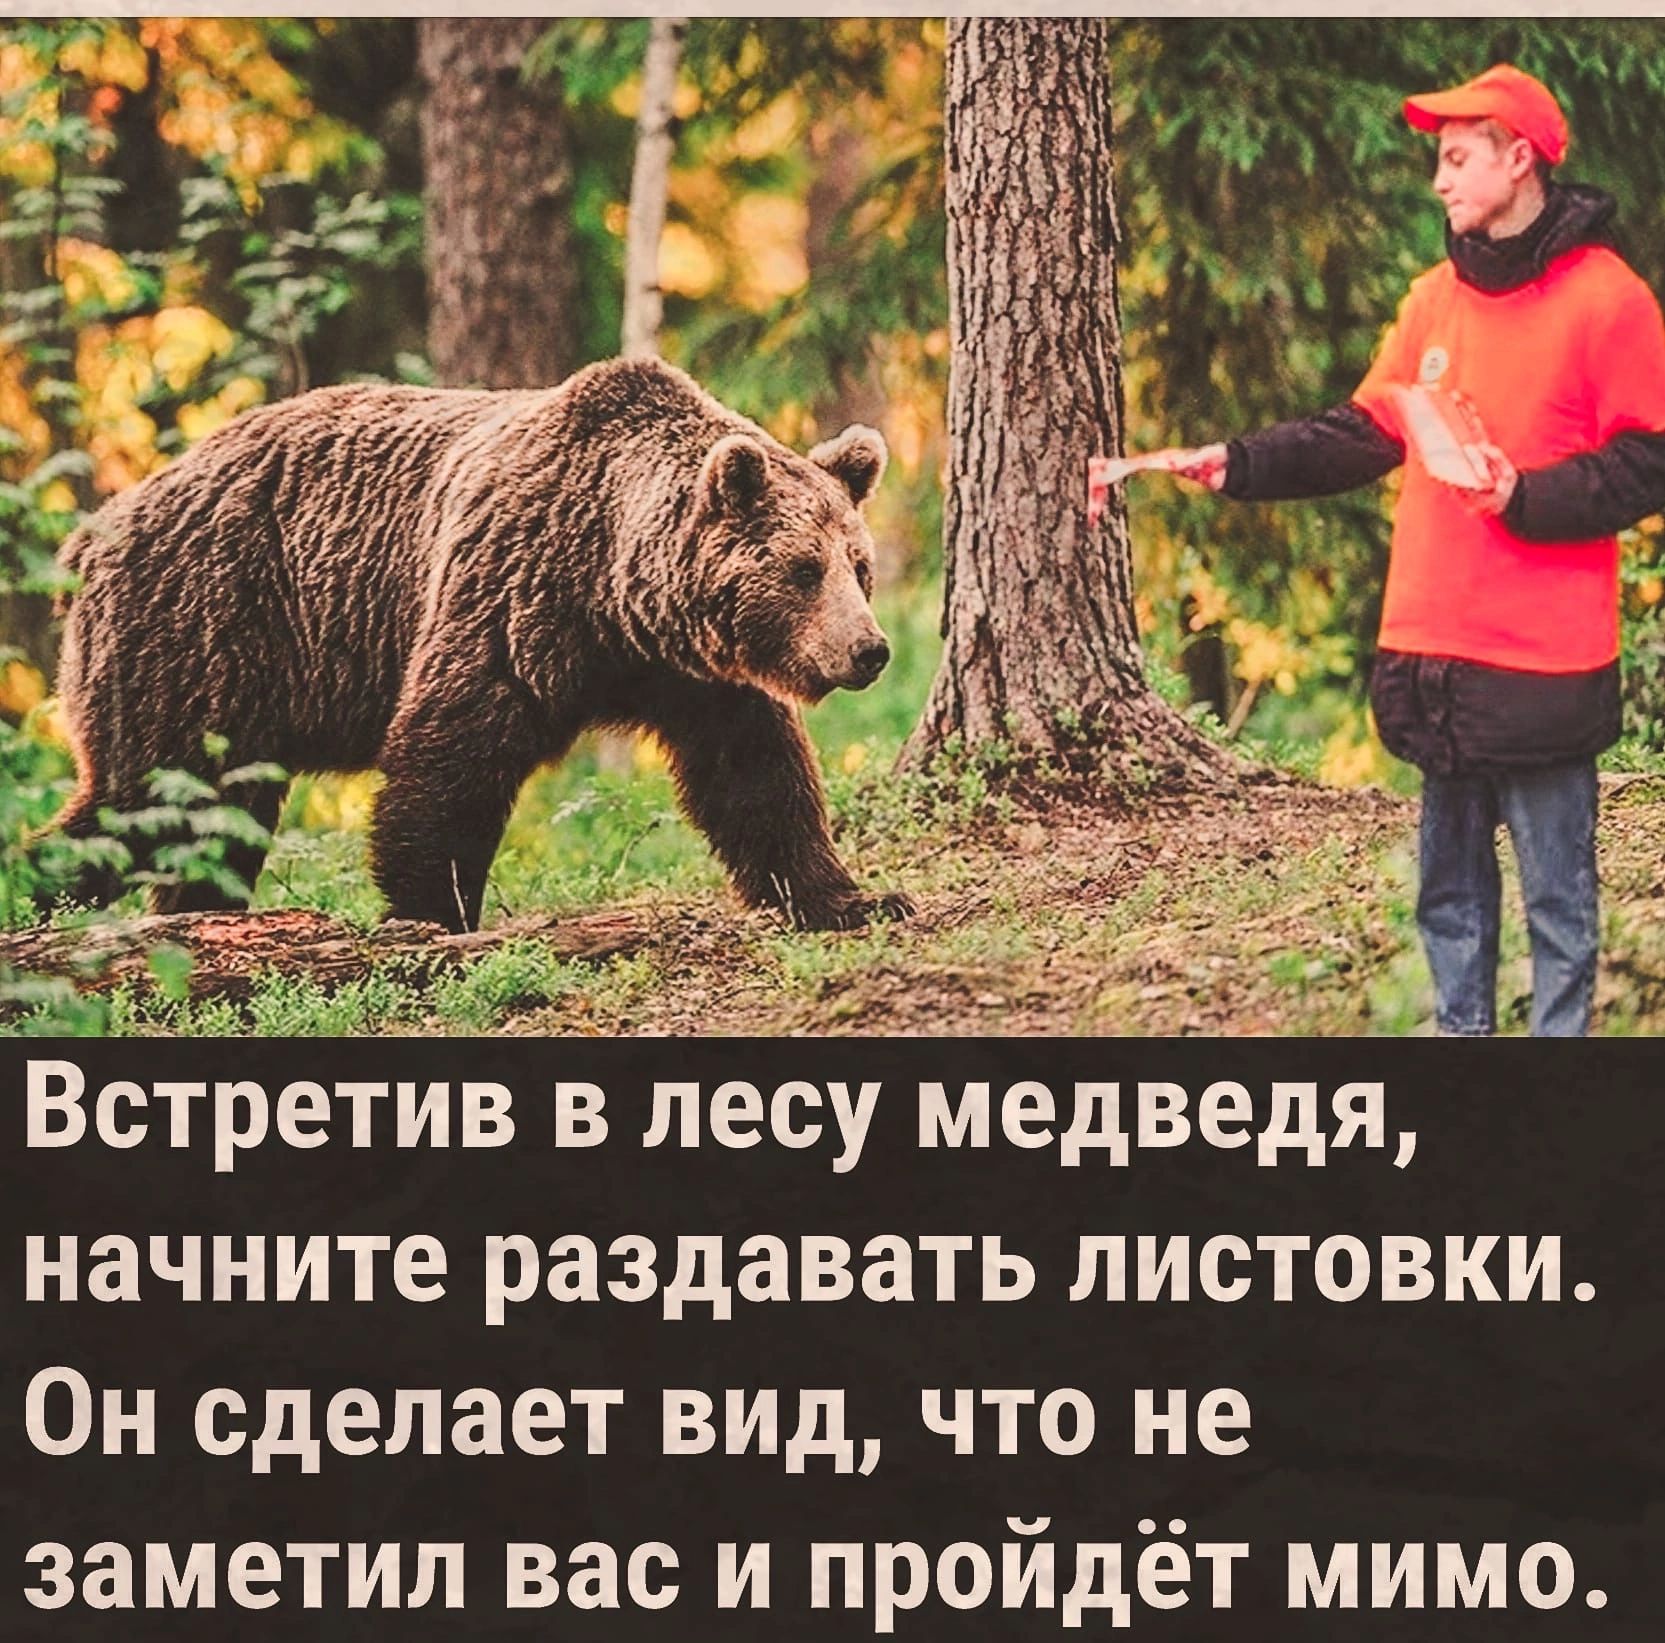 Бери медведя иди в шкаф